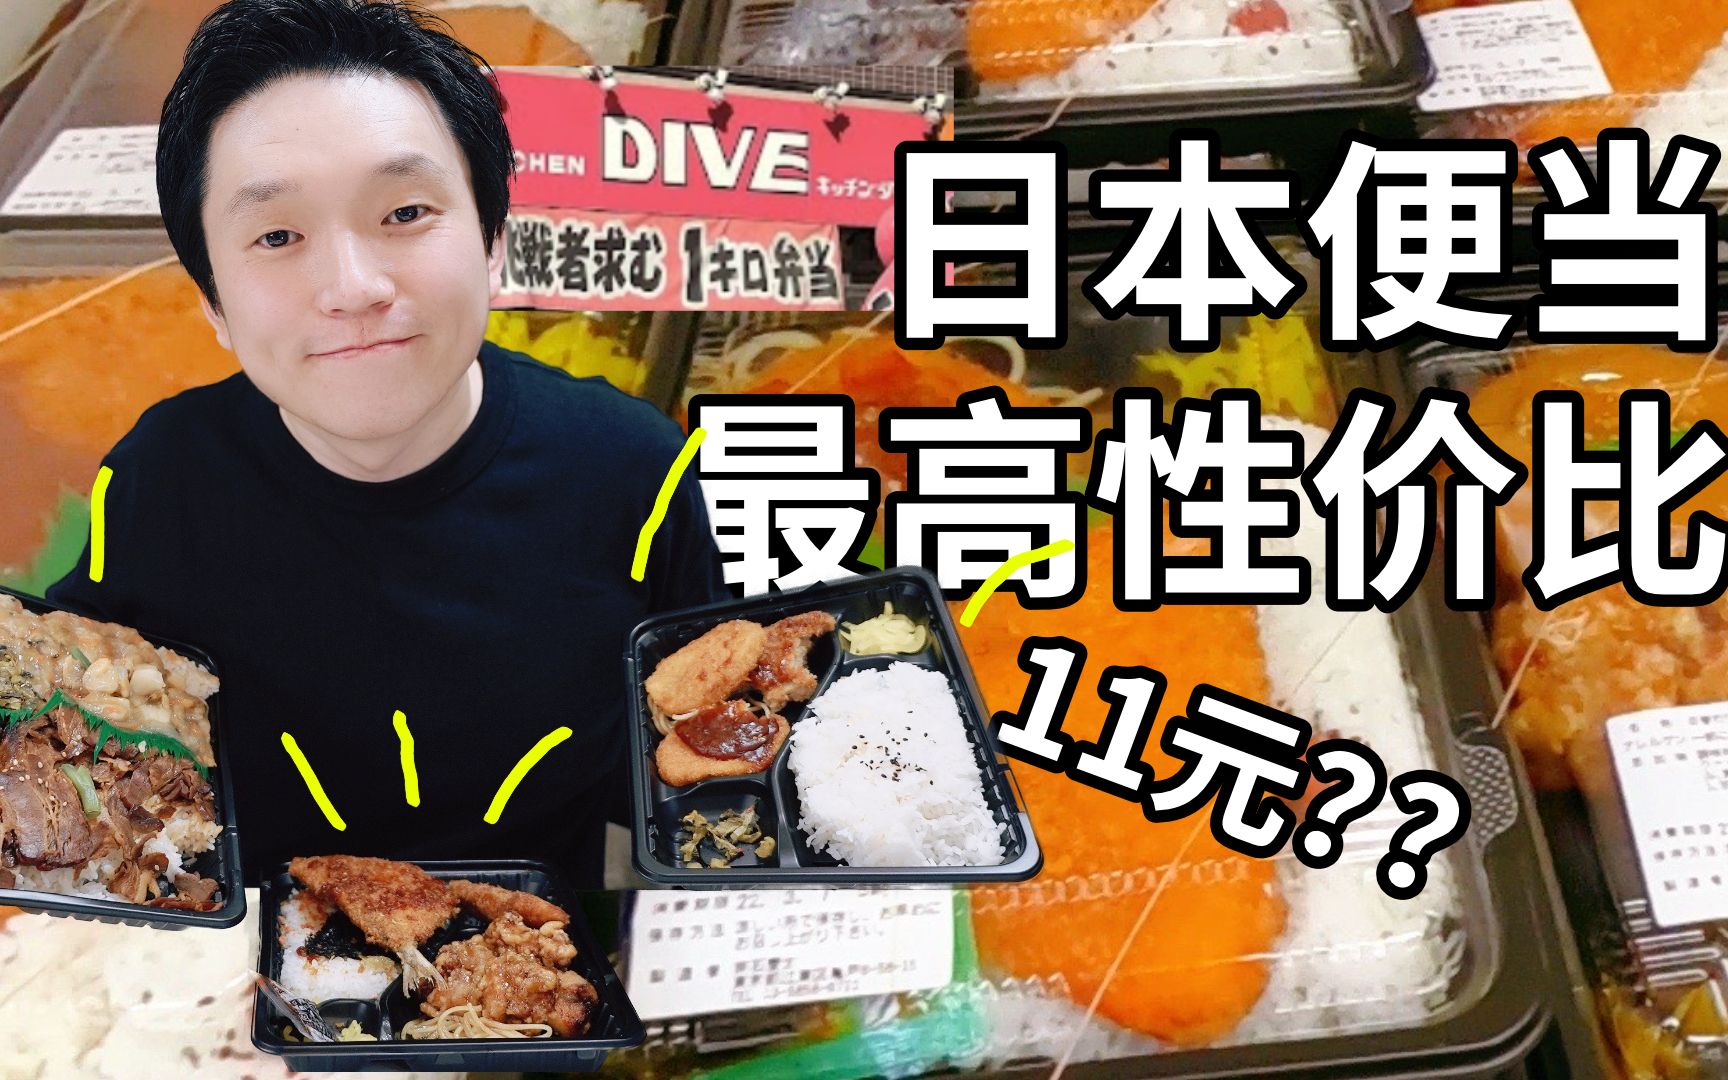 试吃日本最高性价比便当(盒饭) 附一个让人生气的故事